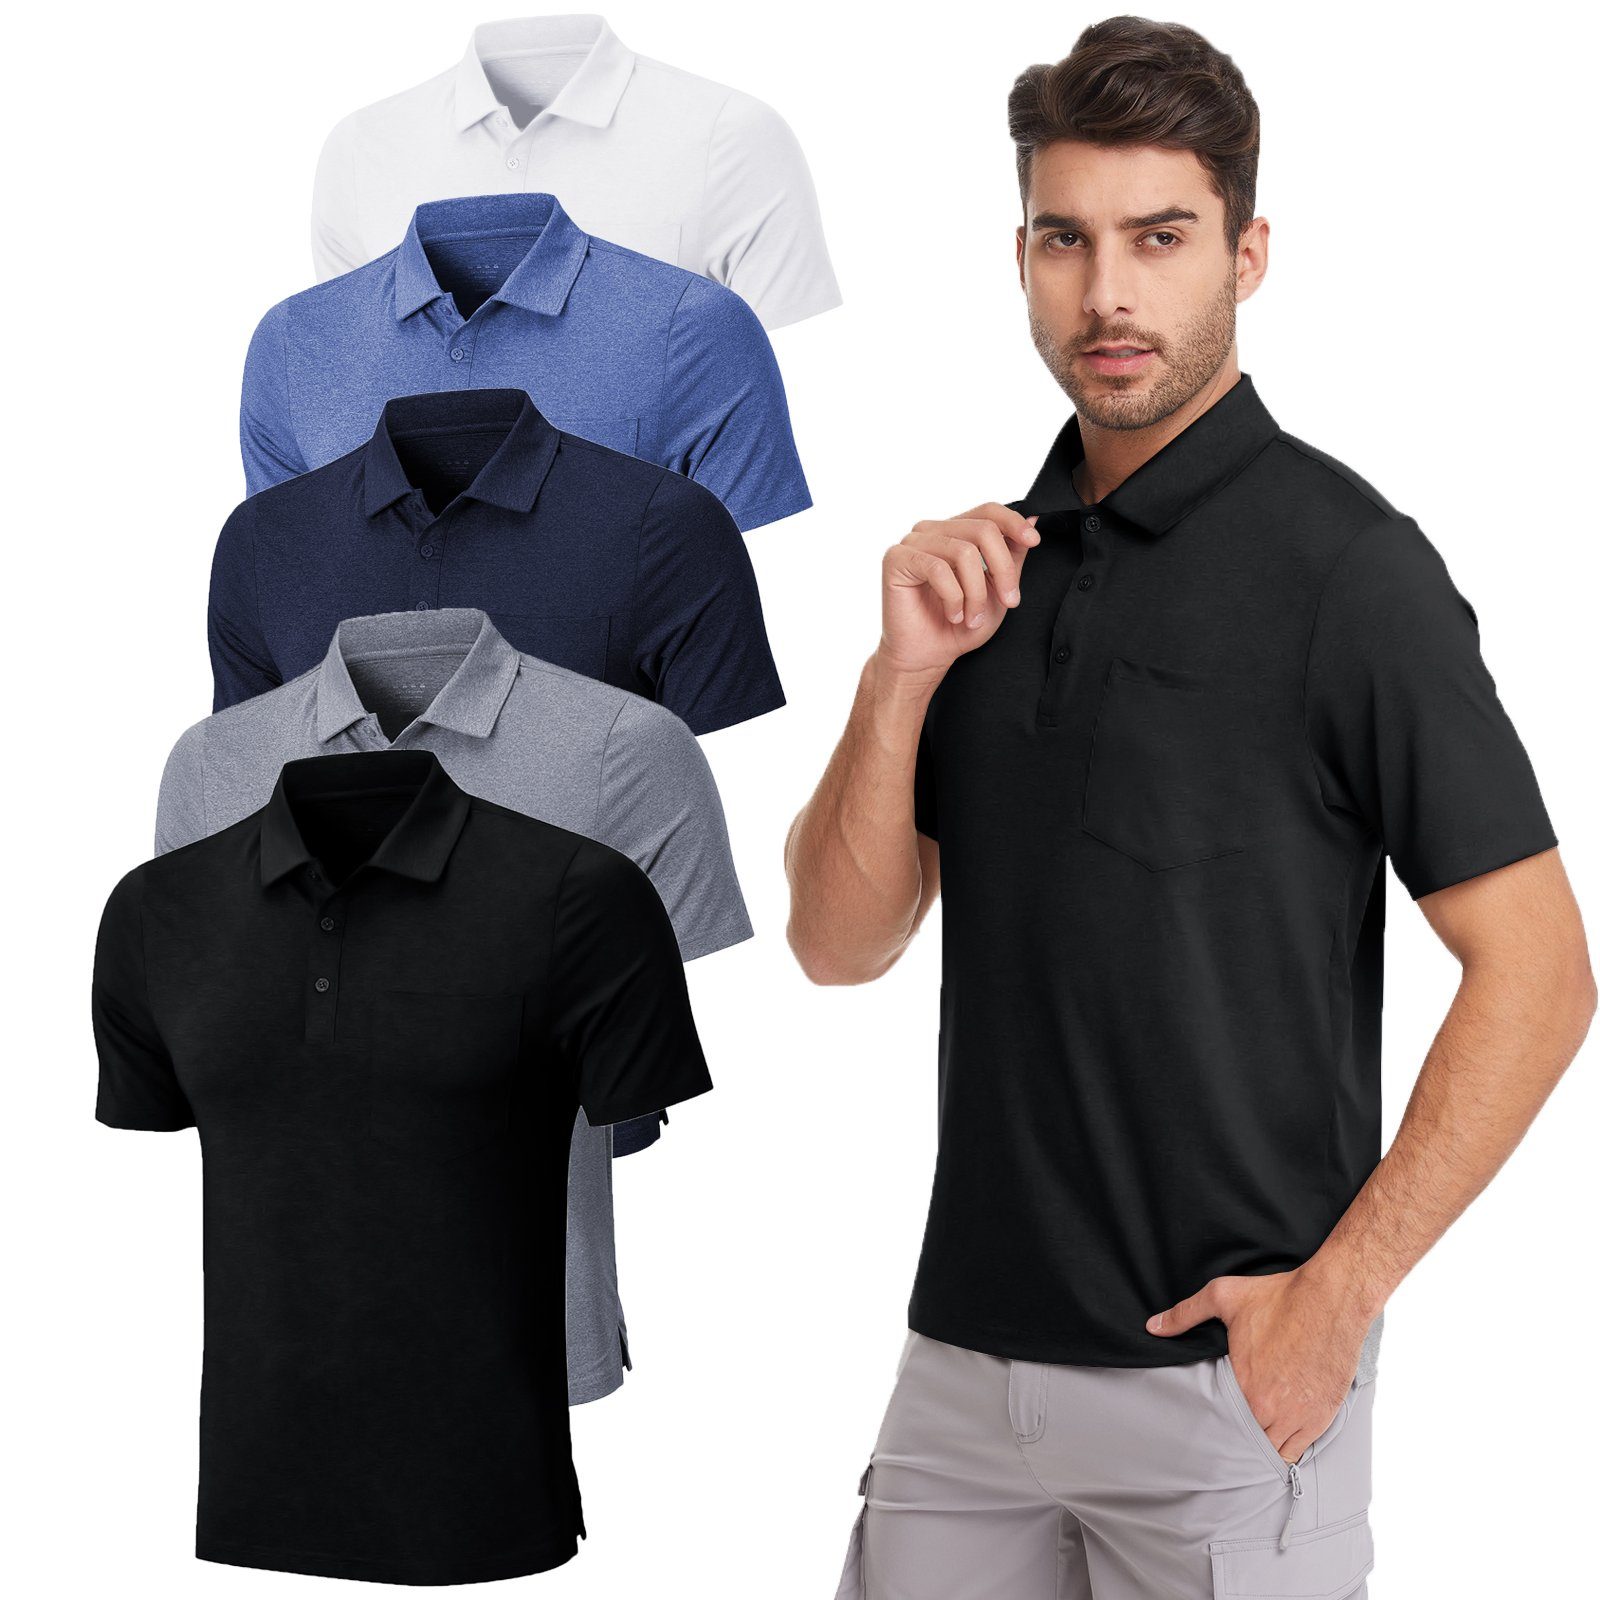 MEETYOO Poloshirt Herren Poloshirt Polohemd (Kurzarm T-Shirt, Classic Tee Hemd) Unifarben, Casual, Button-Down-Kragen, Atmungsaktiv Navy